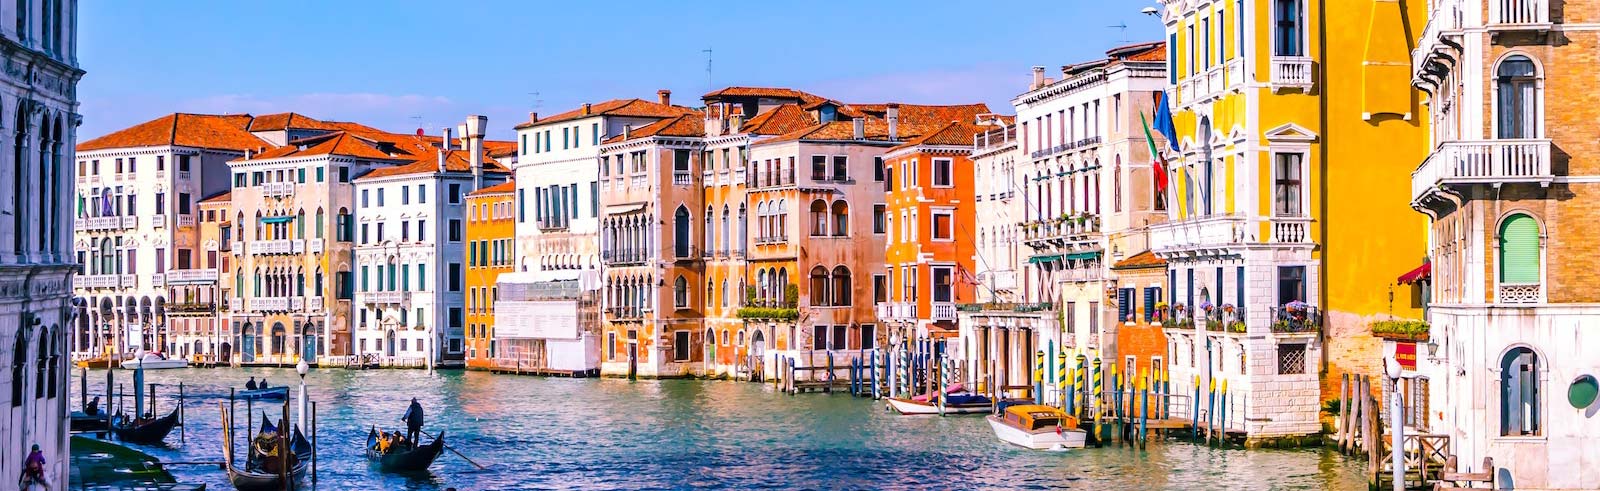 Венеция Италия канал с красочными зданиями